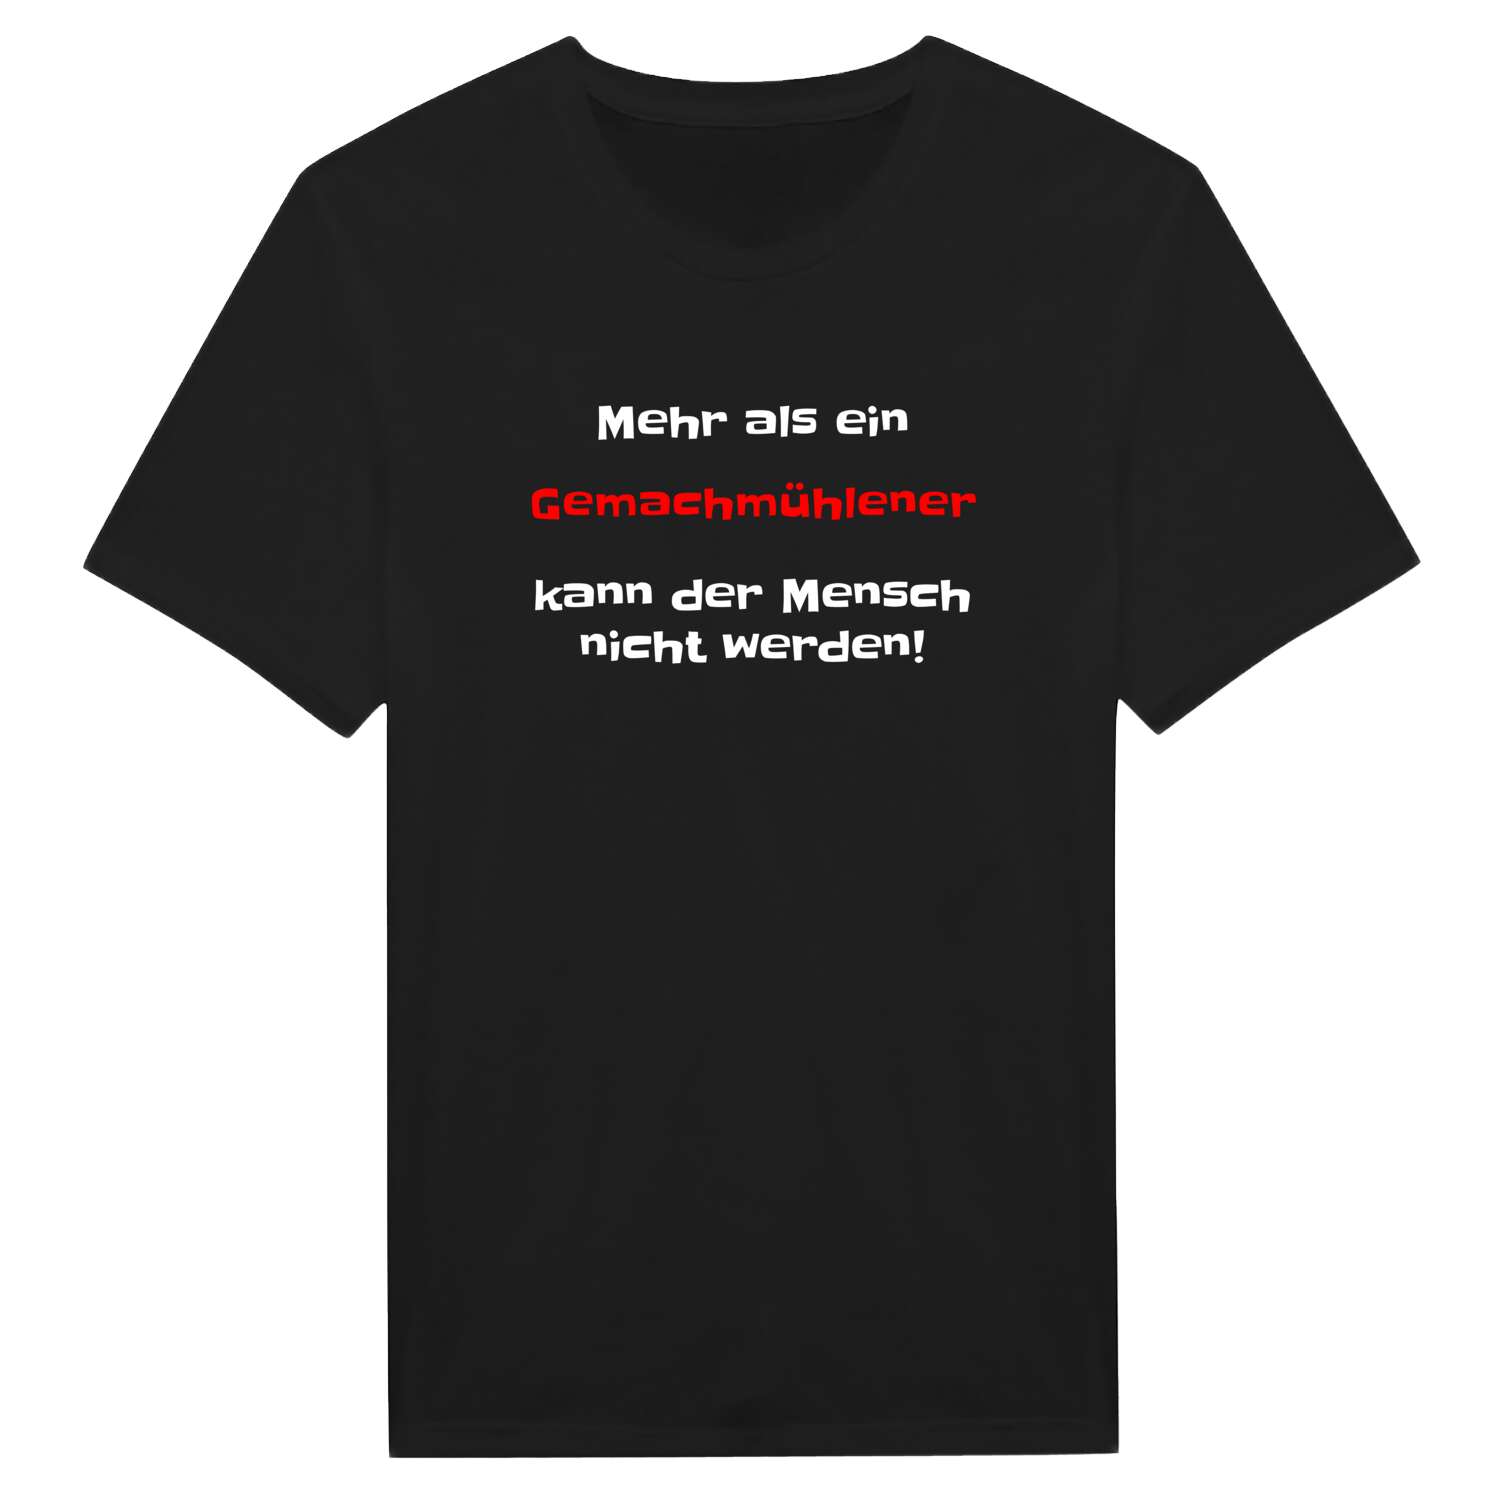 Gemachmühle T-Shirt »Mehr als ein«